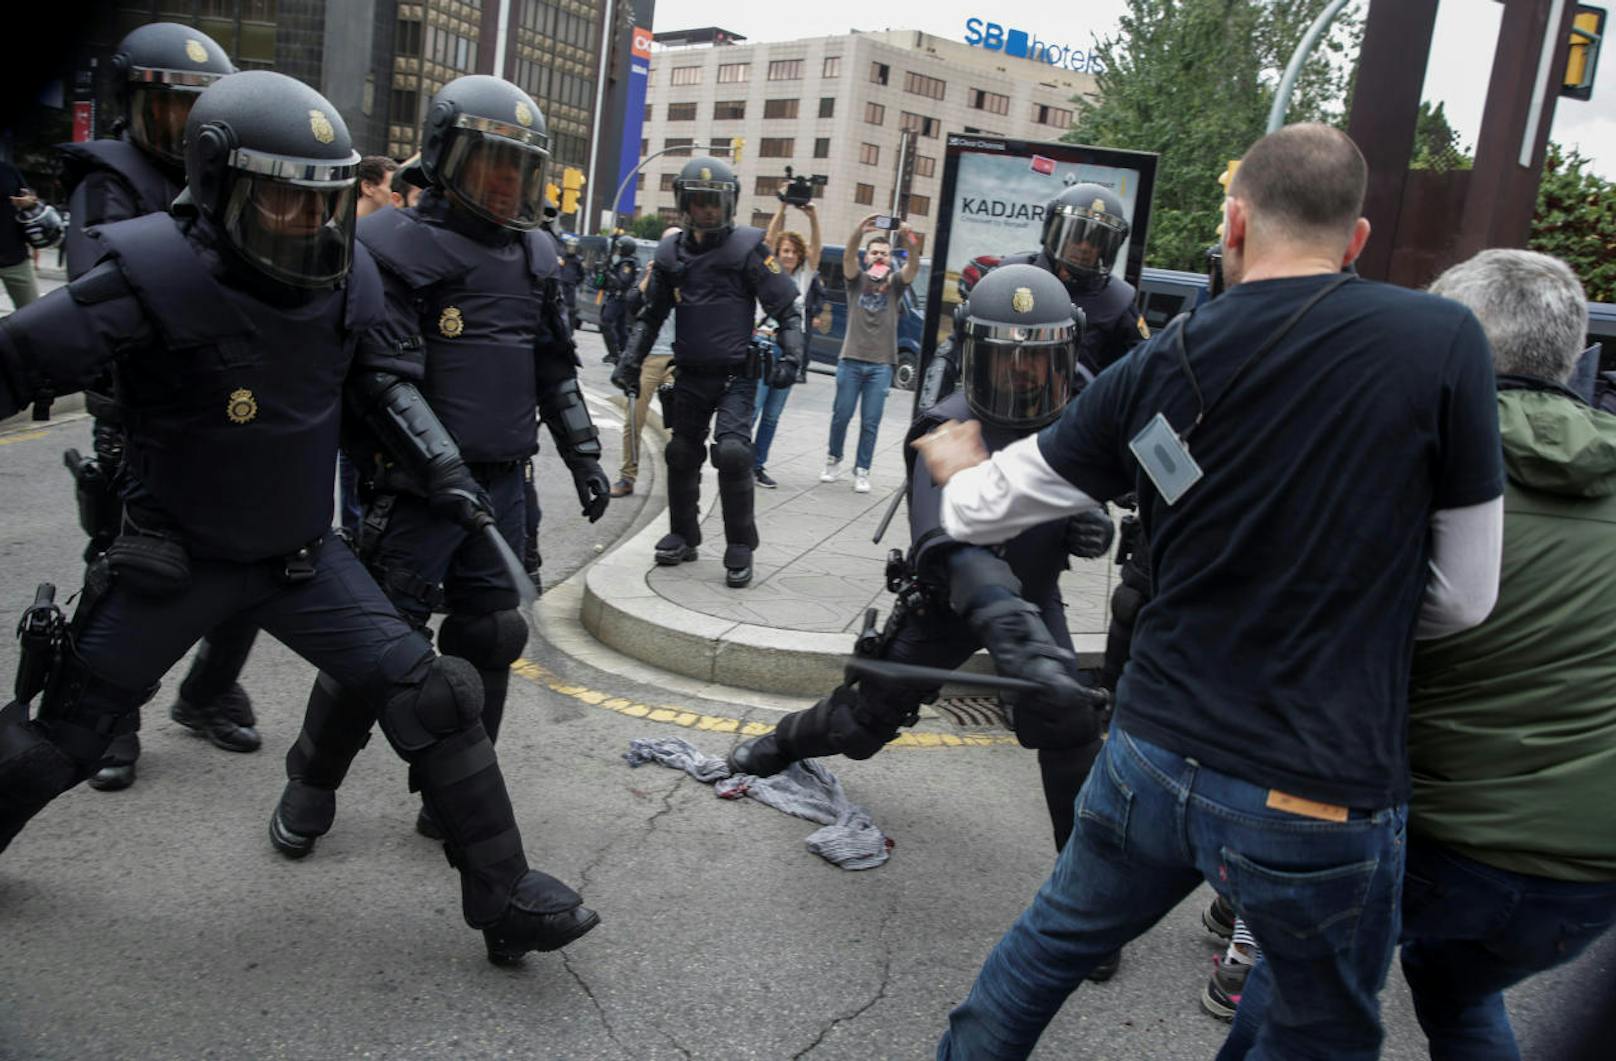 Die spanische Polizei wollte die Katalanen von der Stimmabgabe beim Referendum fernhalten, auch mit Gewalt. Bilder von blutüberströmten Verletzten zeigen die Polizeibrutalität.
